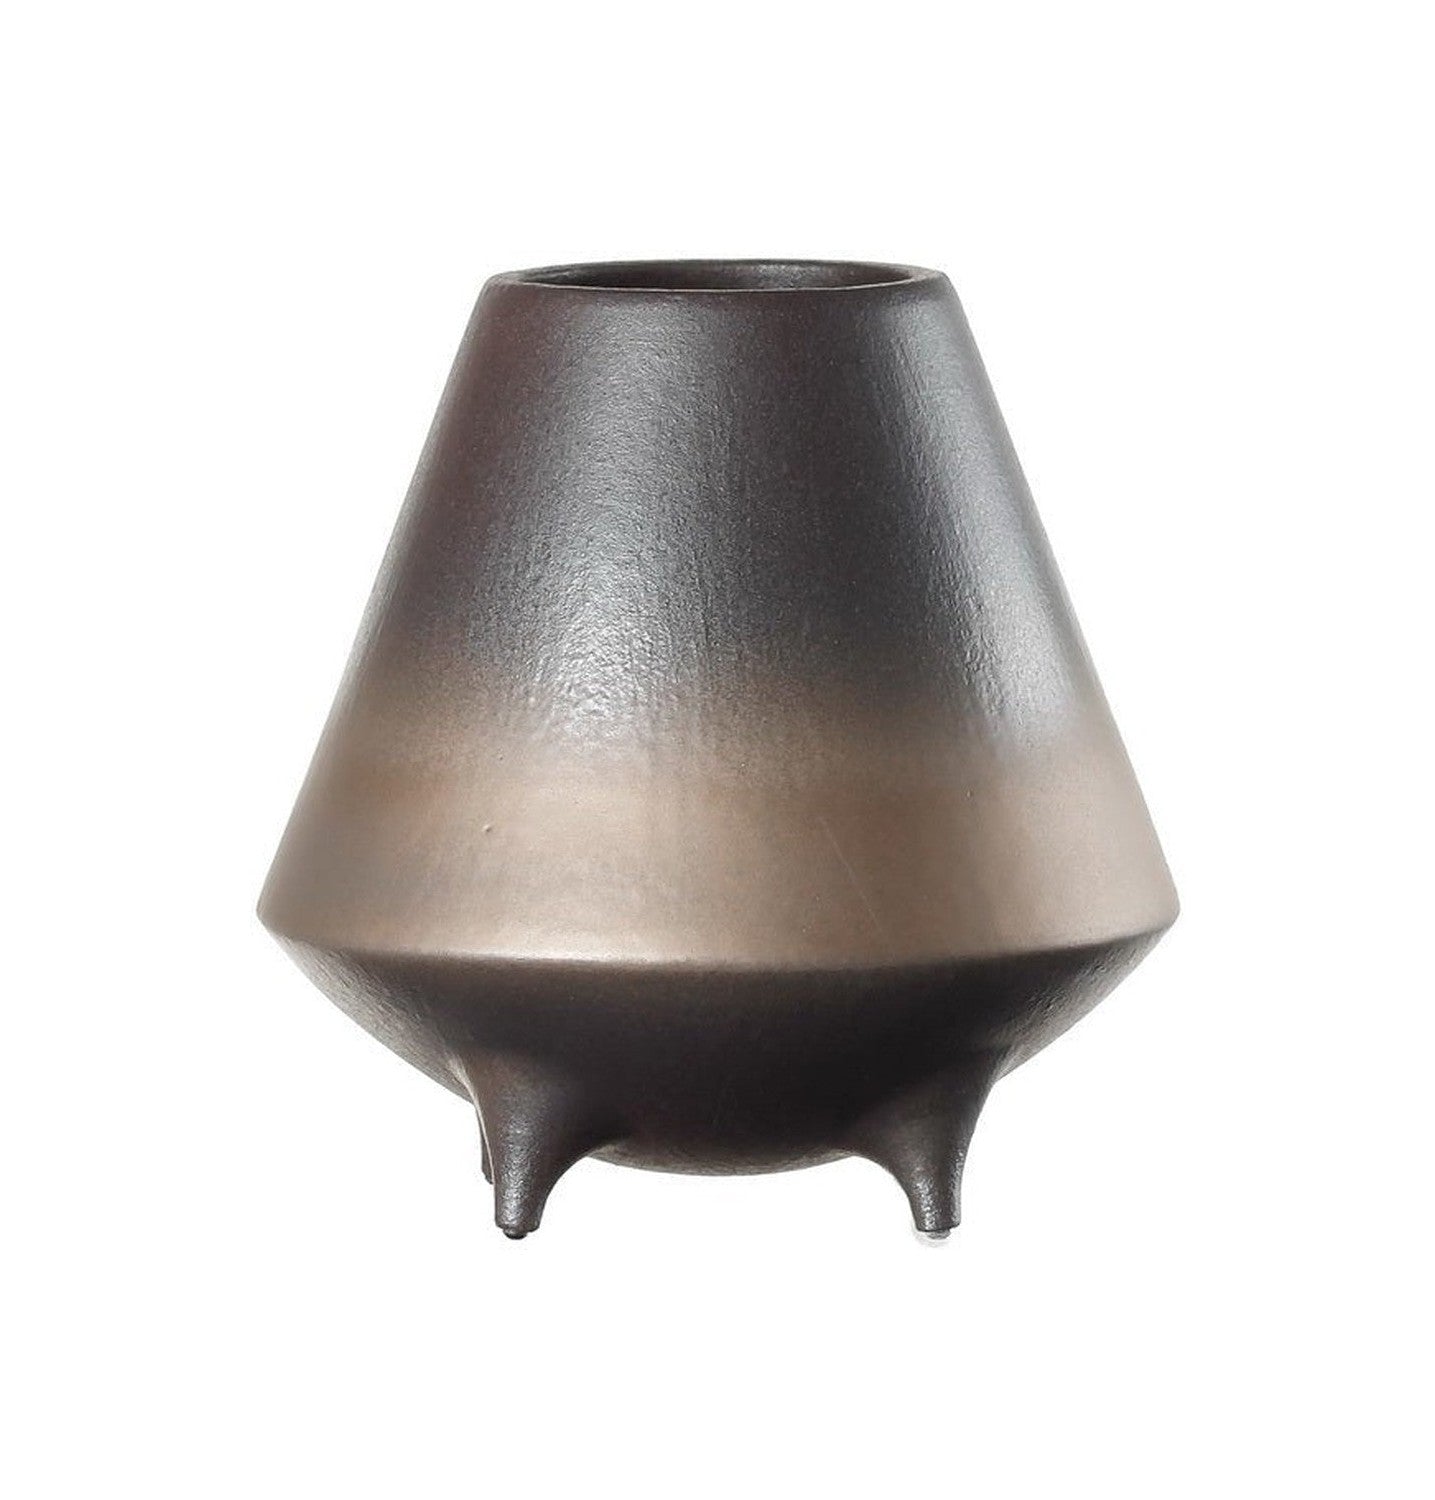 Nuevo moderno Design Bowl Bowl Ceramic de alta gama East+West, OTA20BB